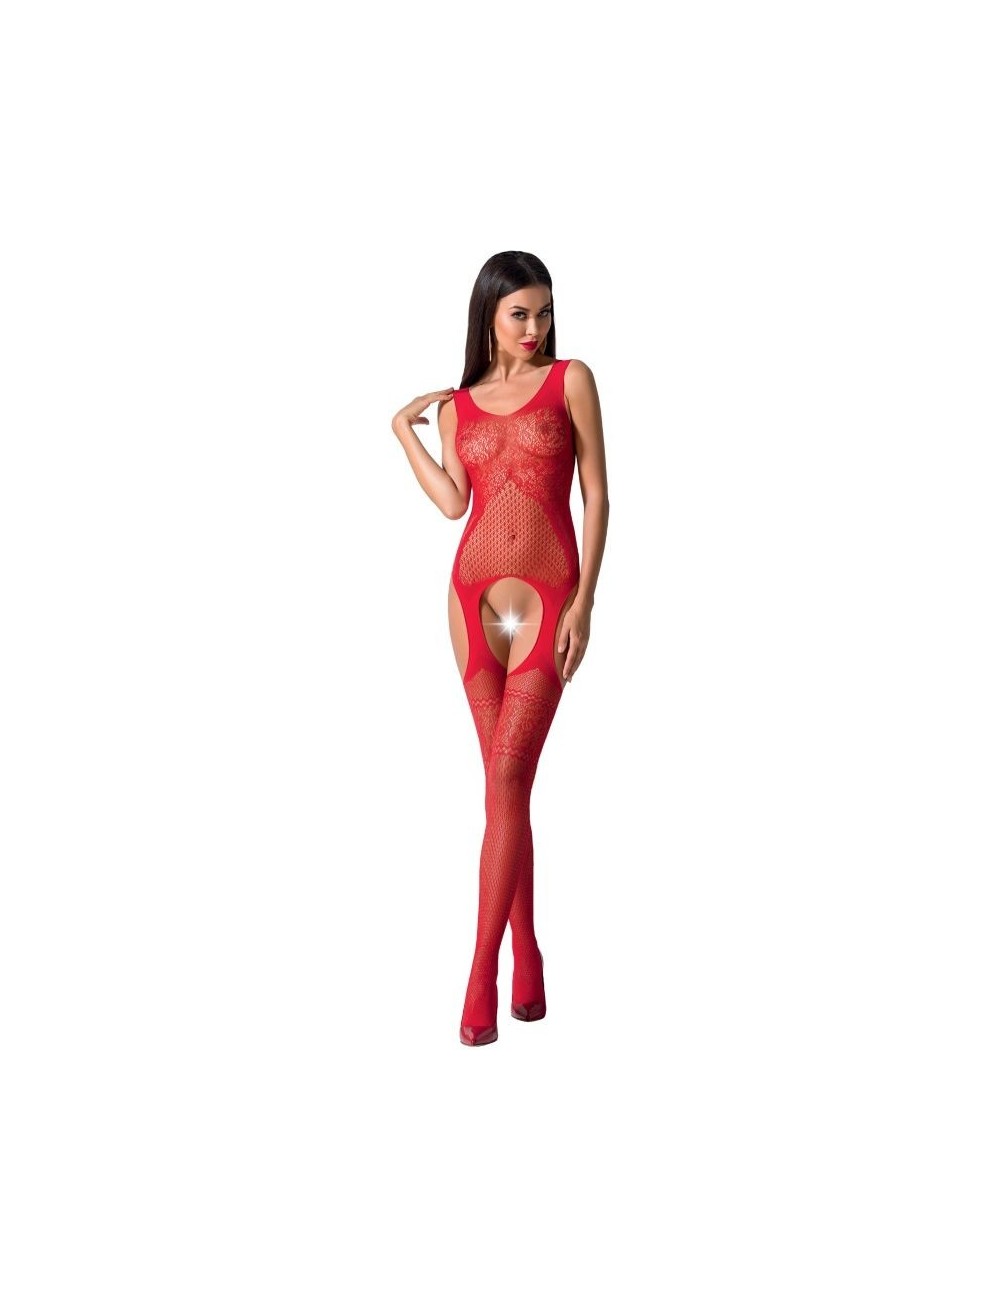 Lingerie - Combinaisons - Passion woman bs061 bodystocking rouge taille unique - Passion Woman Bodystockings